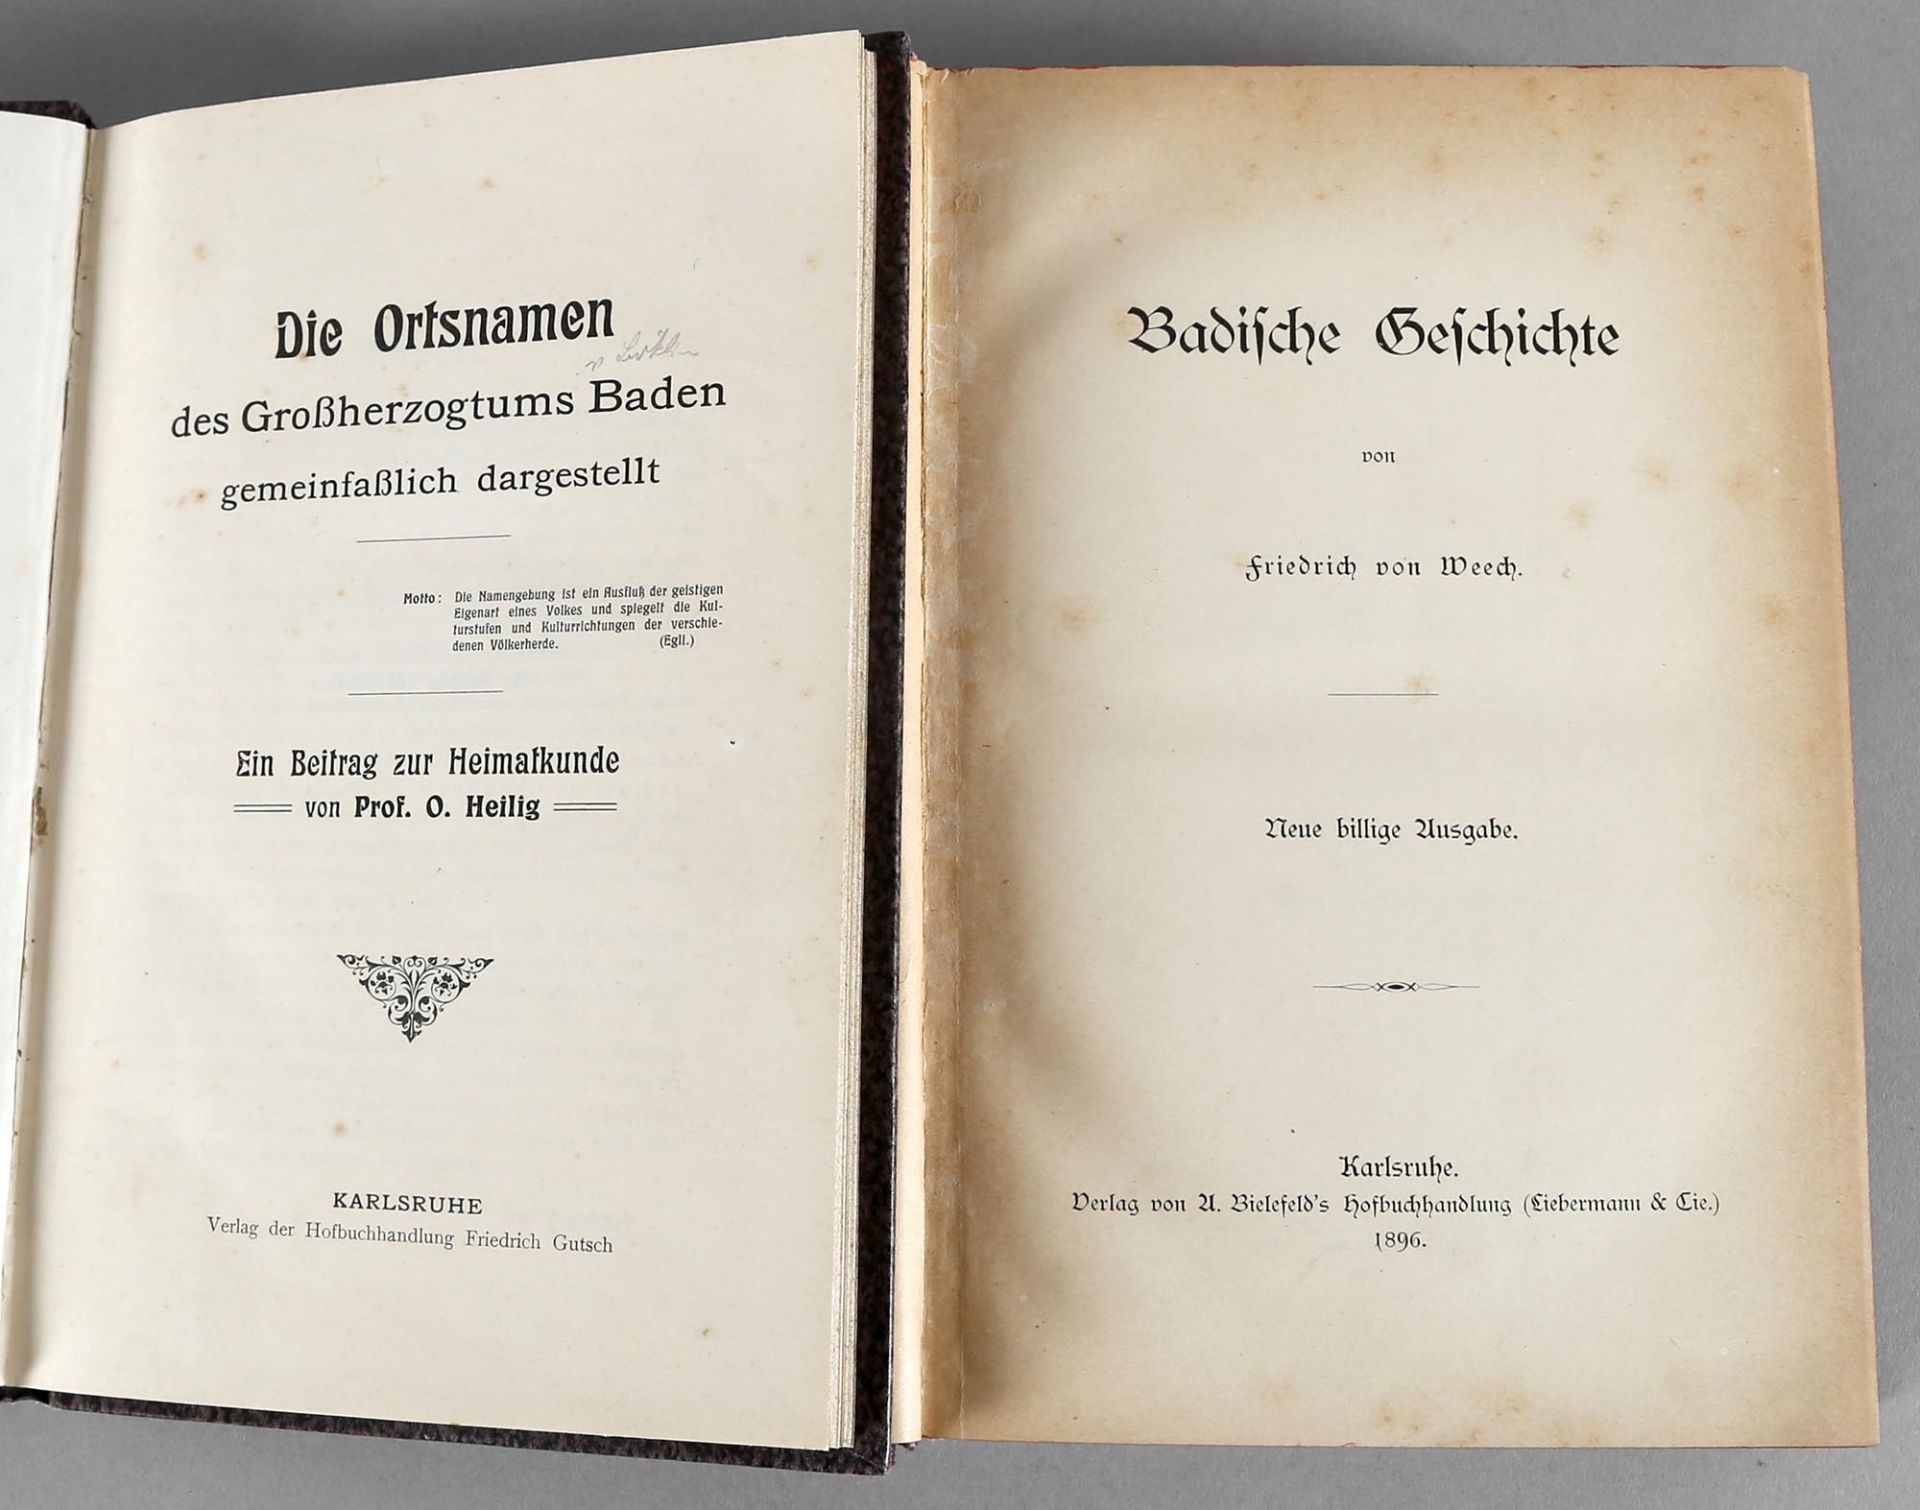 Konvolut von 2 Bänden Badische Geschichte- Prof. O. Heilig: "Die Ortsnamen des Großherzogtums